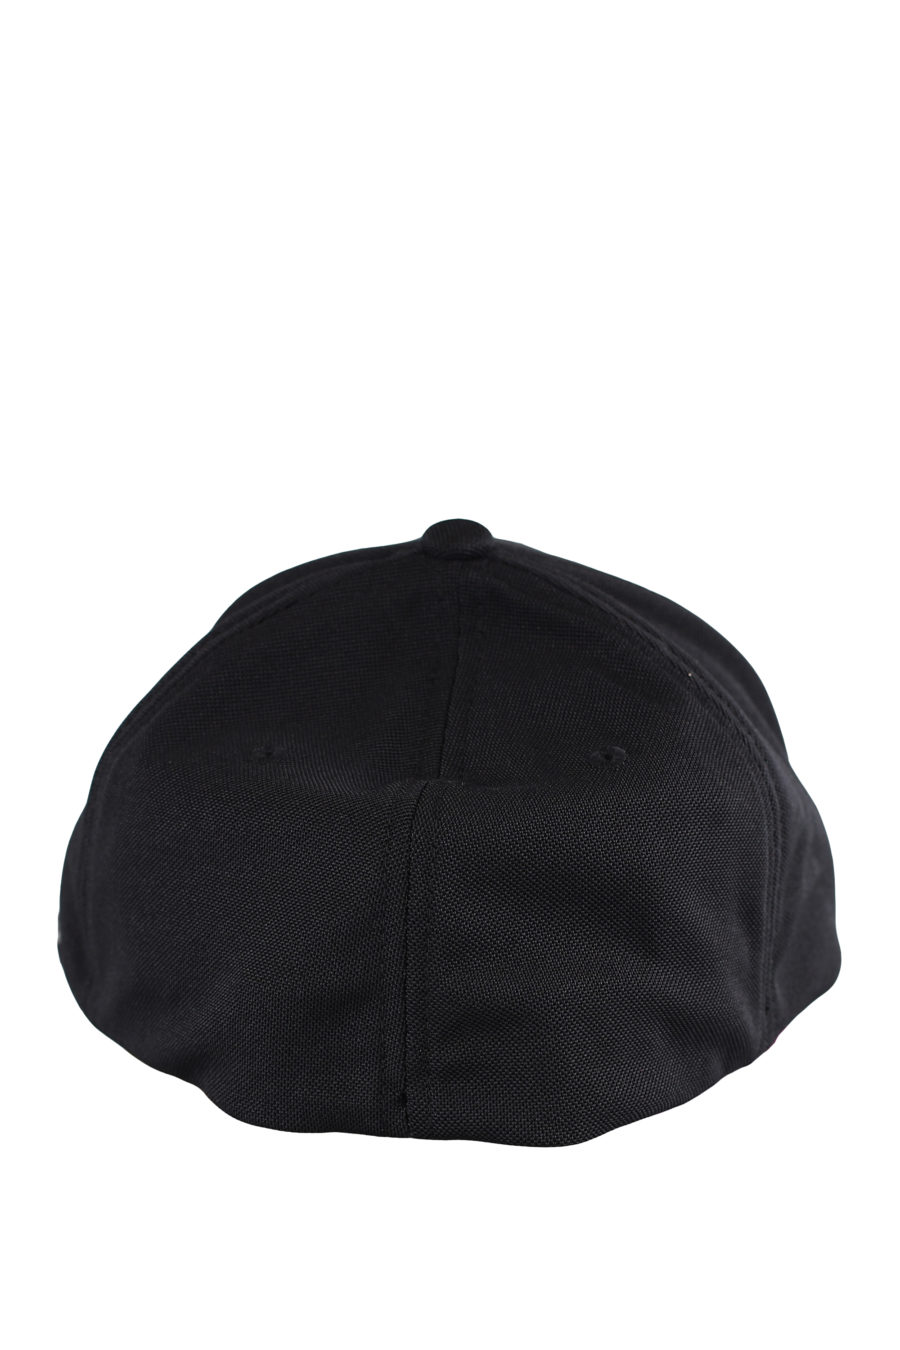 Gorra negra con logotipo engomado "Karl" - IMG 9605 1